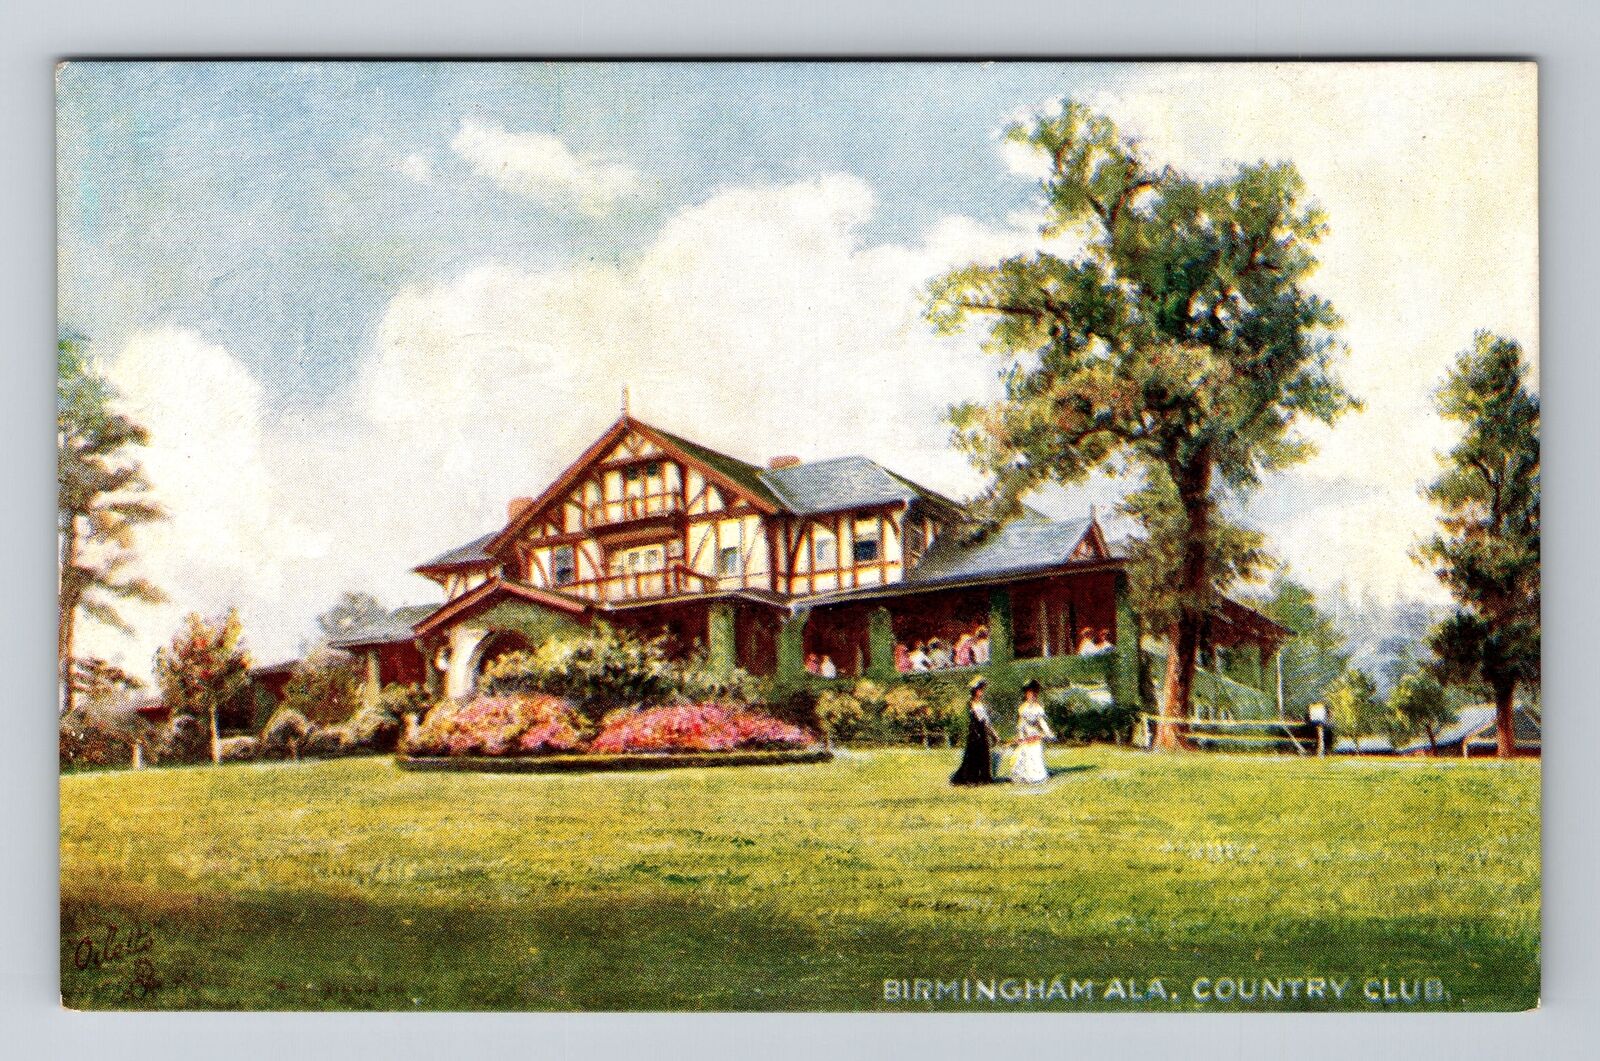 Birmingham AL-Alabama, Country Club, Antique Vintage Souvenir Postcard